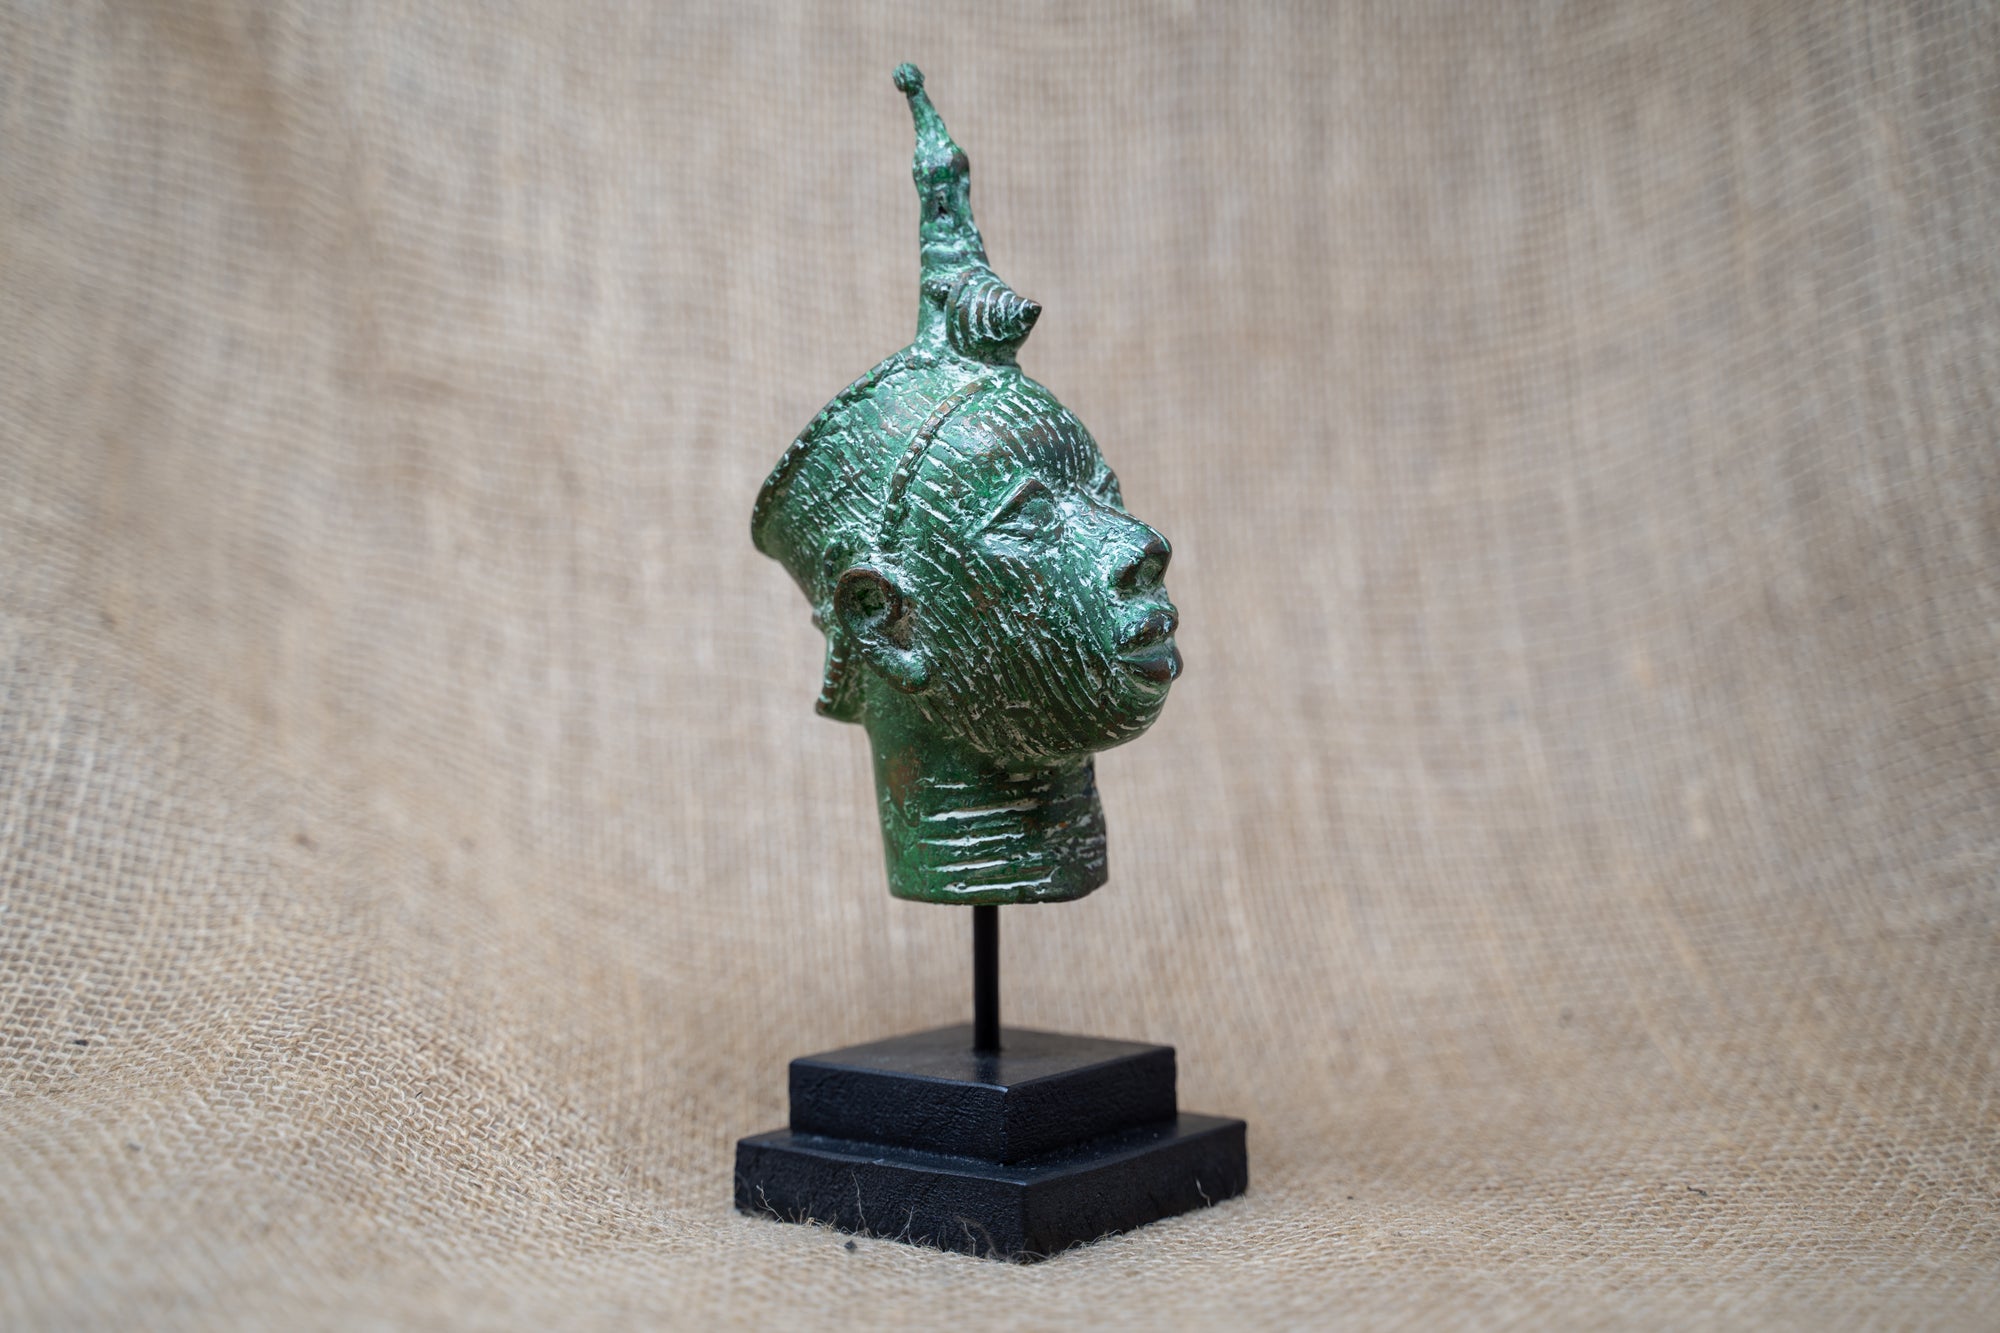 Benin Bronze Head - 37.4